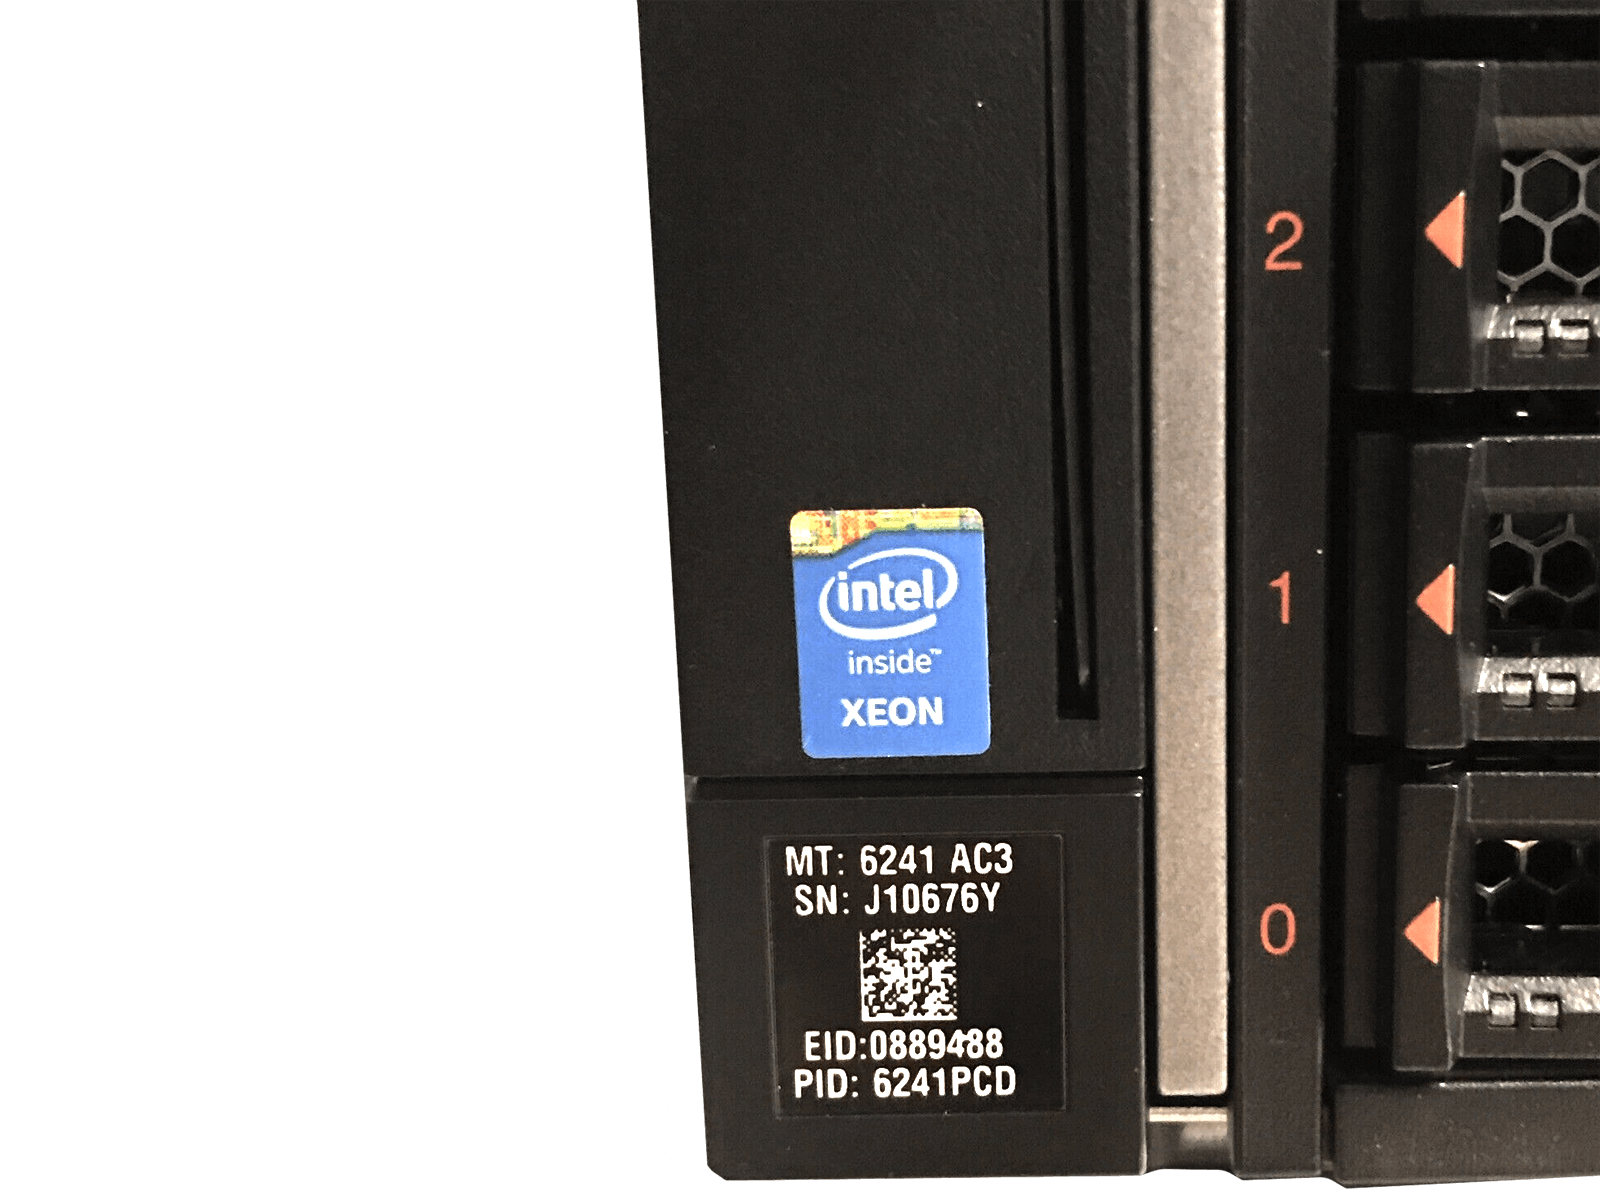 IBM x3850 X6 Server 4x Xeon E7-8880 v3 1024GB DDR4 RAM 3x 300GB 15K 4x 1400W PSU